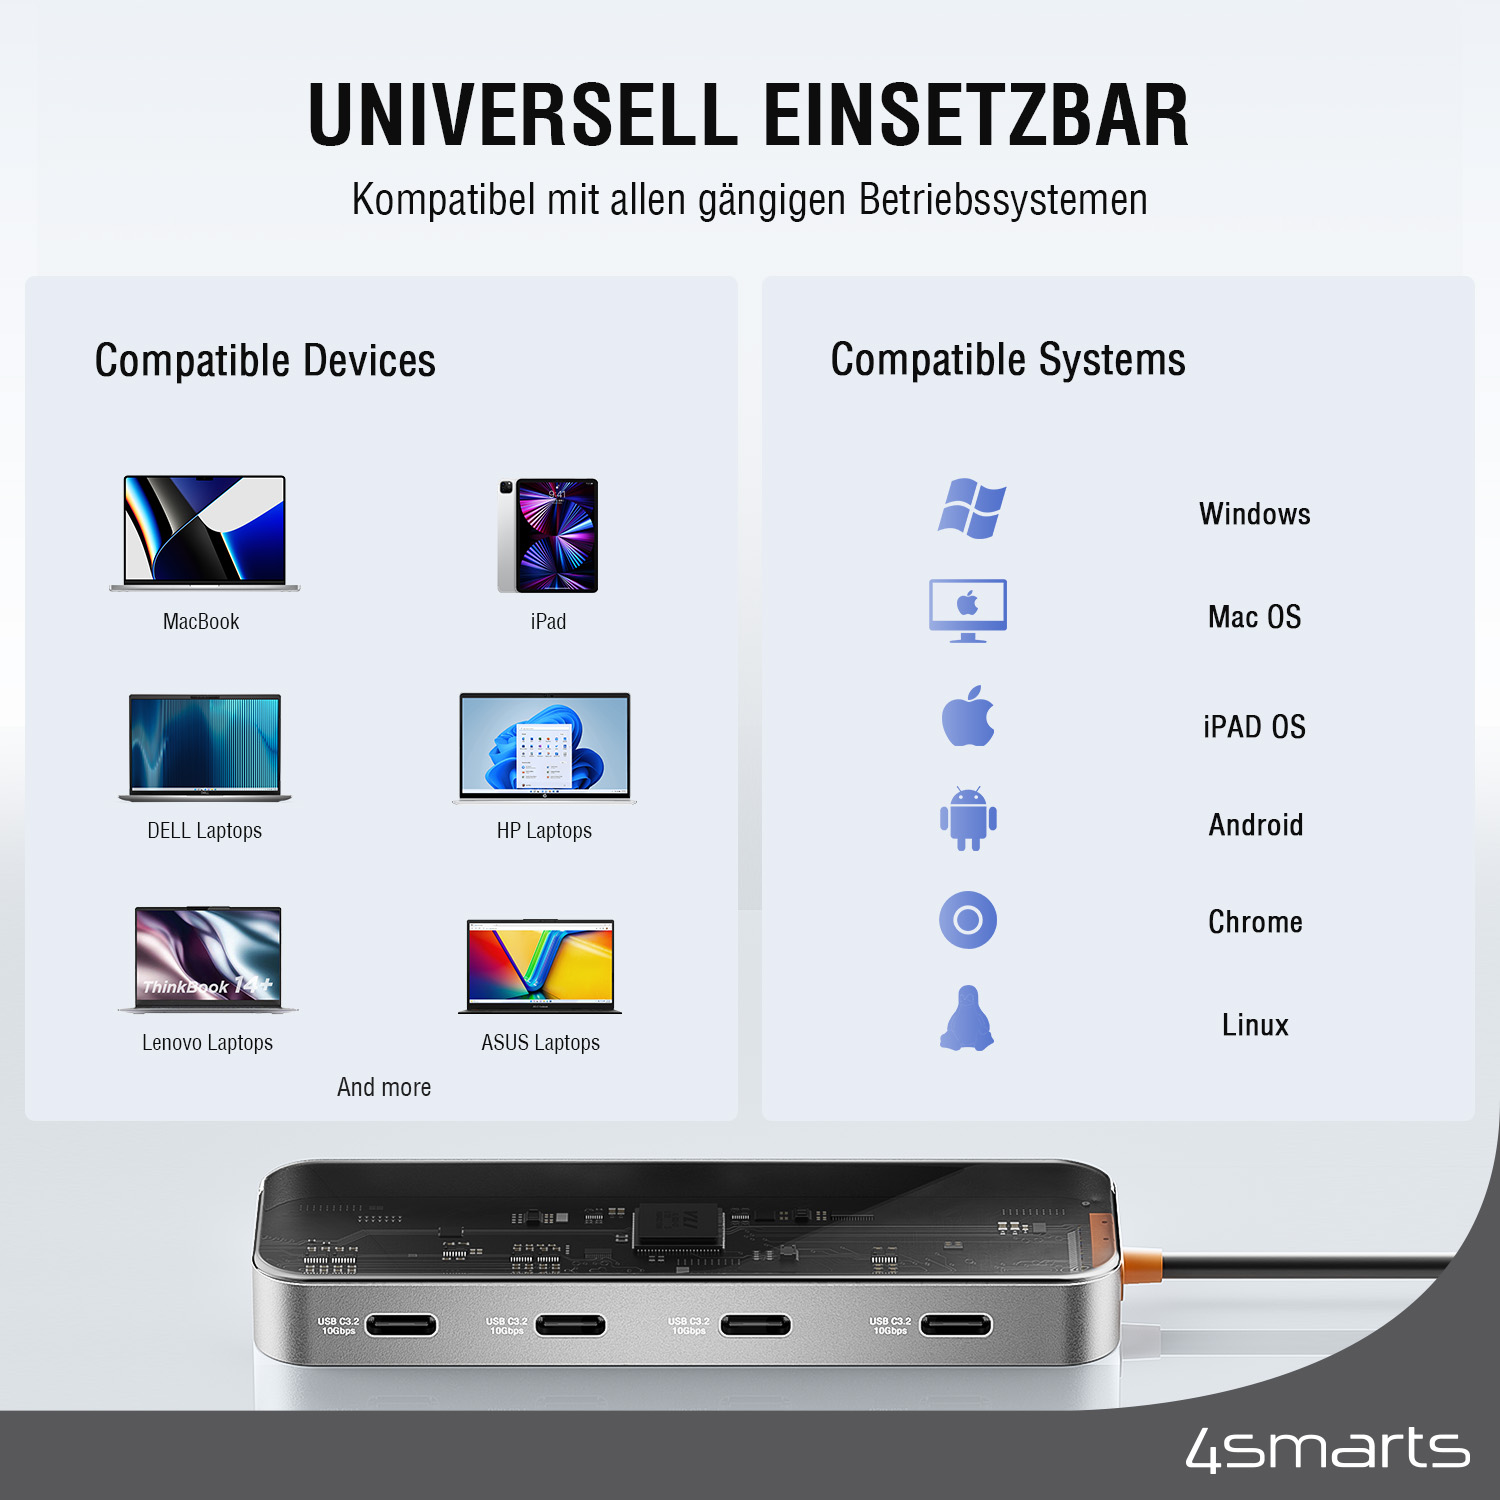 Der USB Hub C von 4smarts ist universell einsetzbar und mit allen gängigen Bestriebssystemen kompatibel.